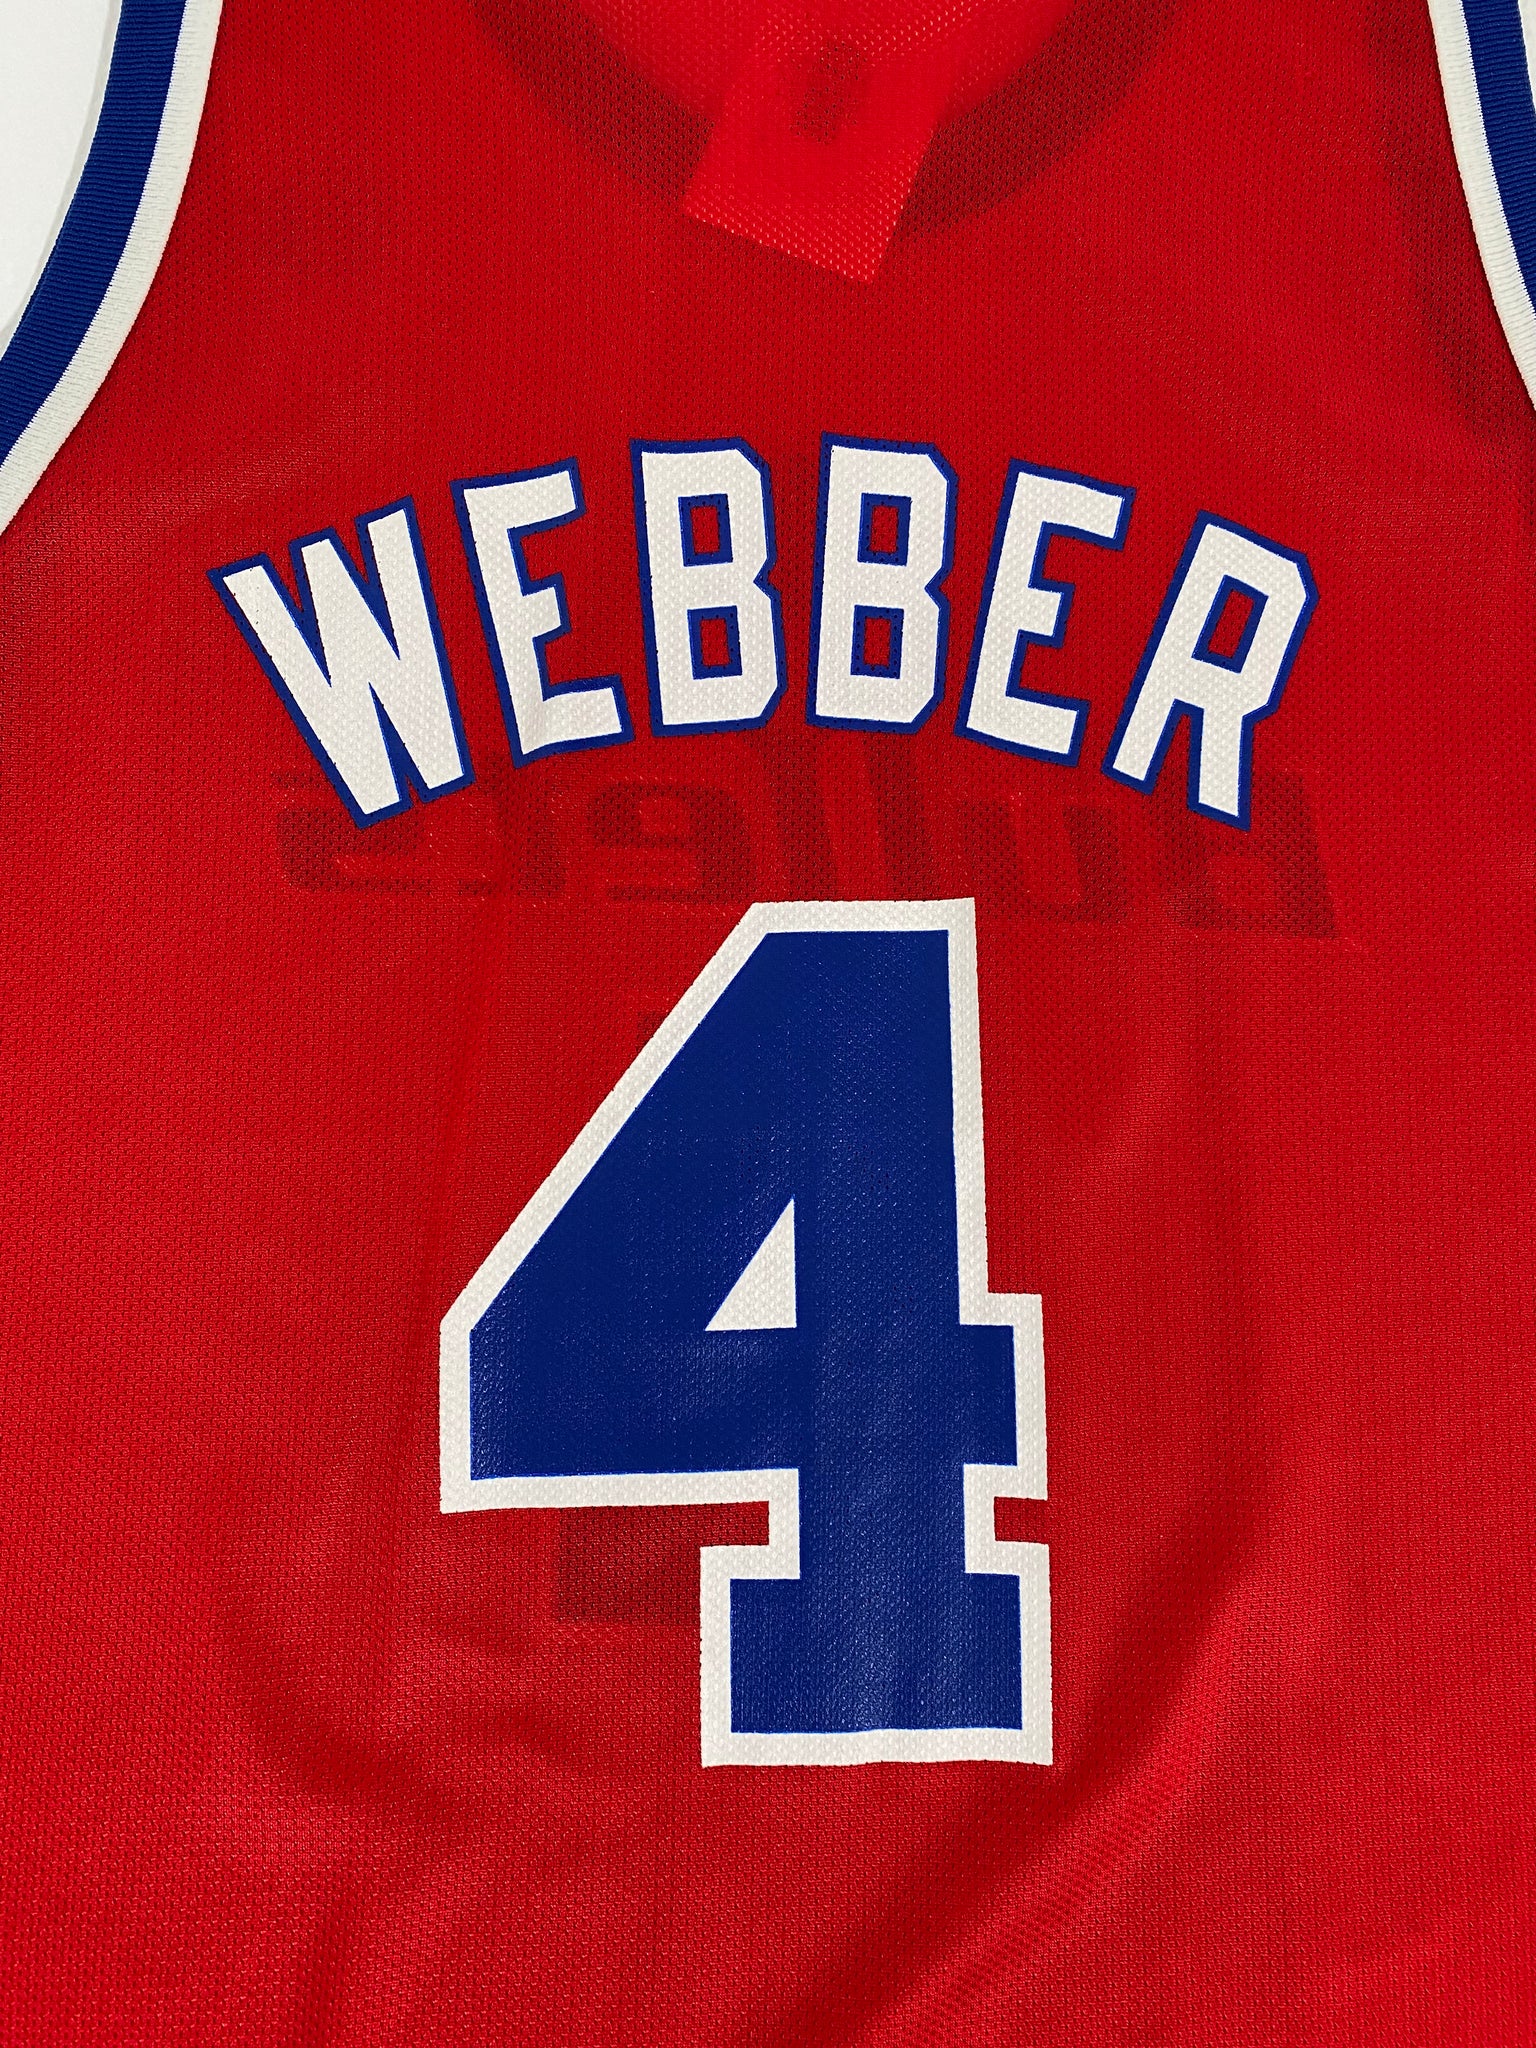 Vintage 1990s Chris Webber Washington Bullets Nba Basketball 